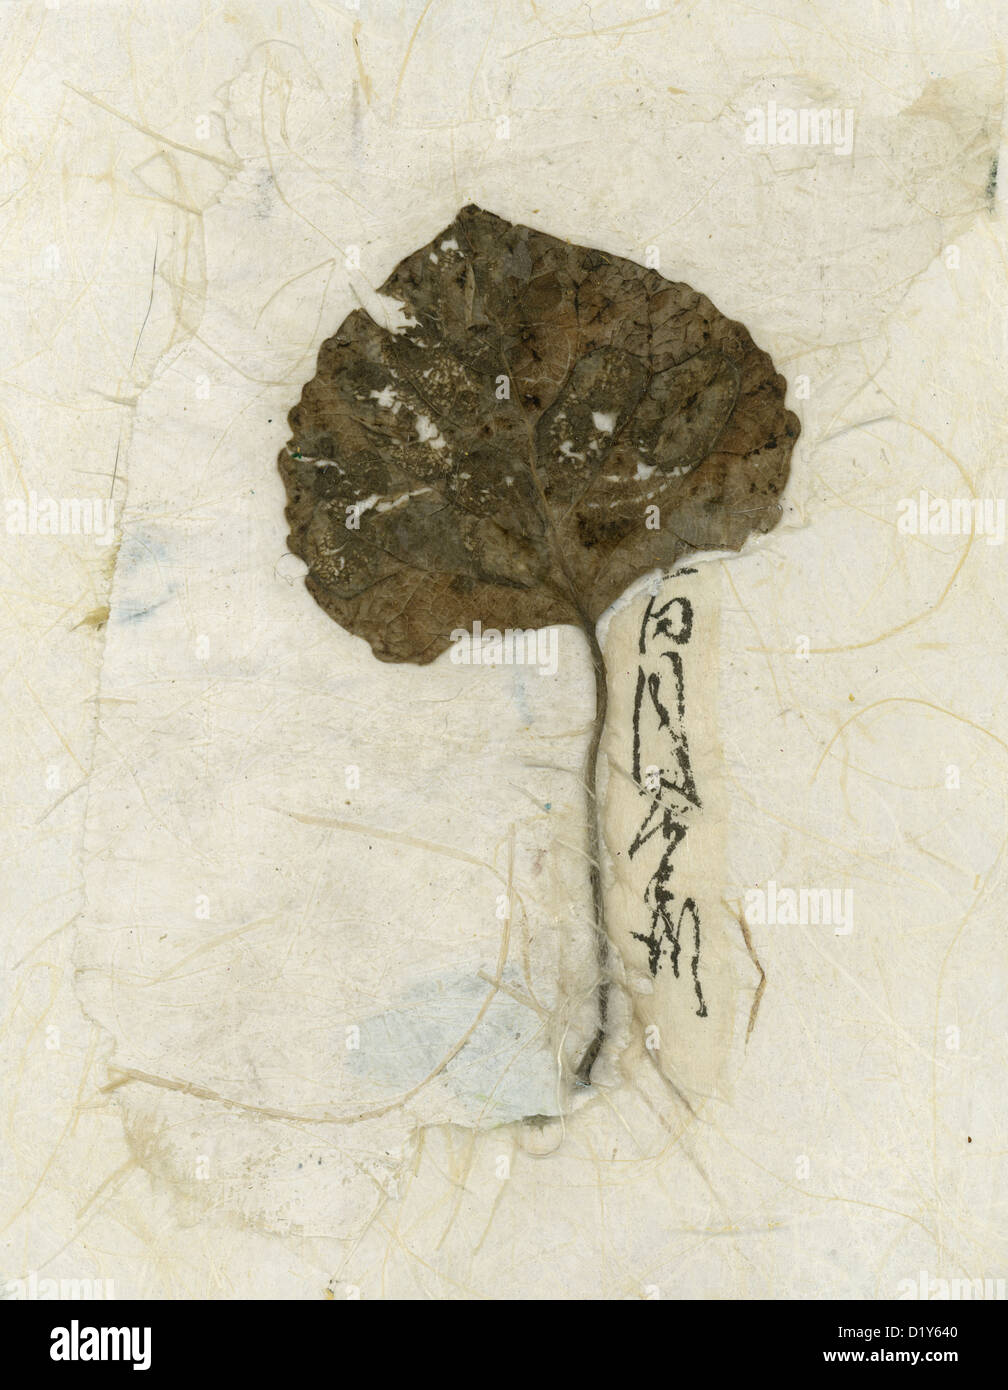 Wabi-sabi foglia foglia cadente collaged sulla carta asiatici con la calligrafia. Foto Stock